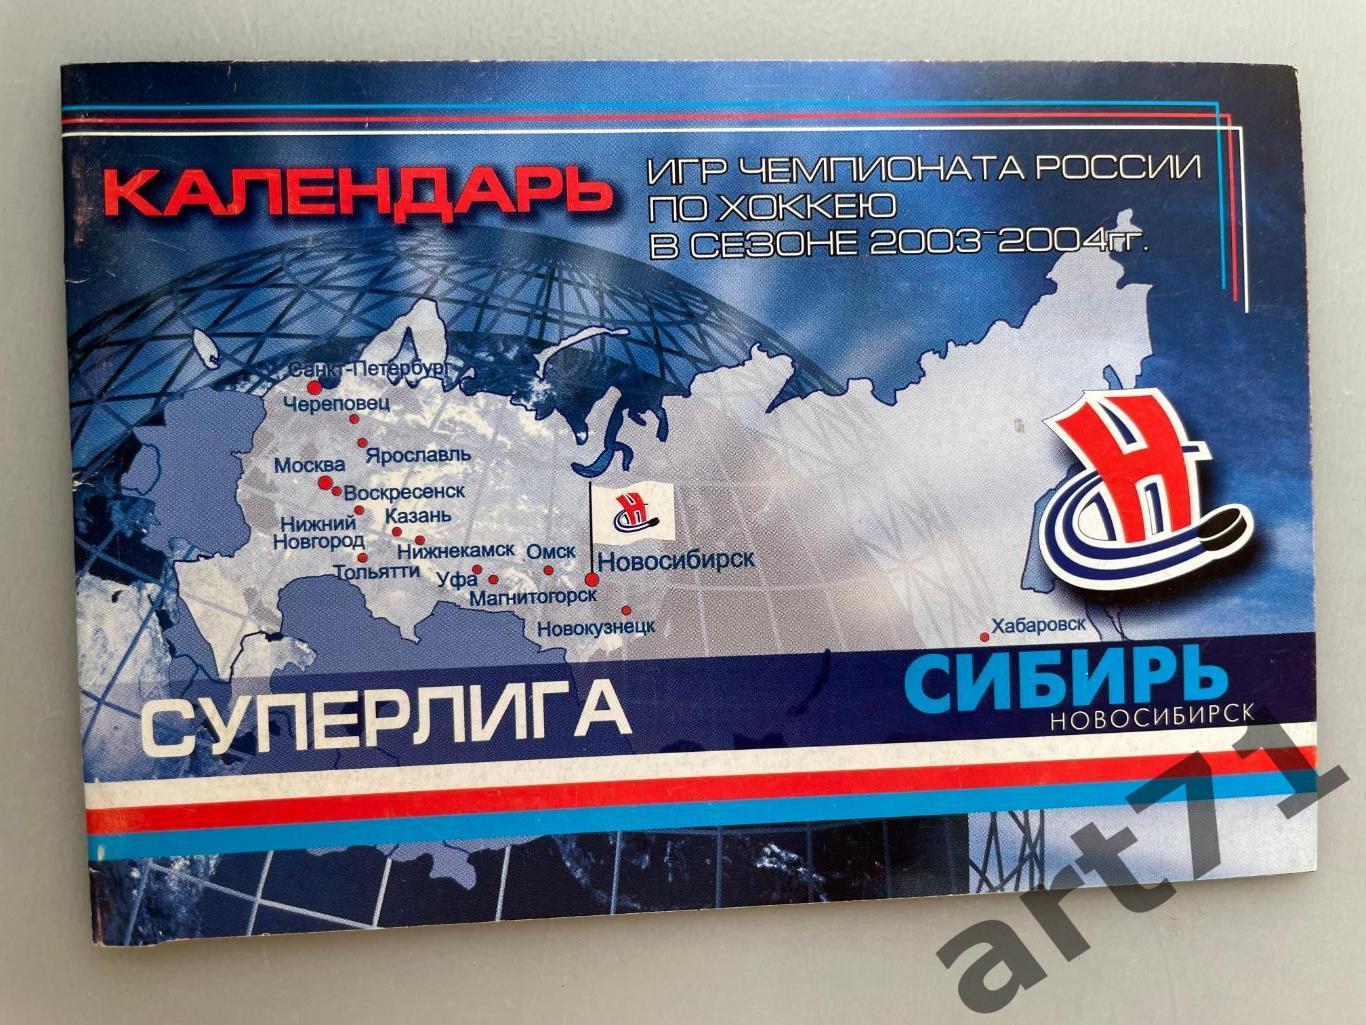 Хоккей. Календарь-справочник (мини) Сибирь Новосибирск 2003 / 2004